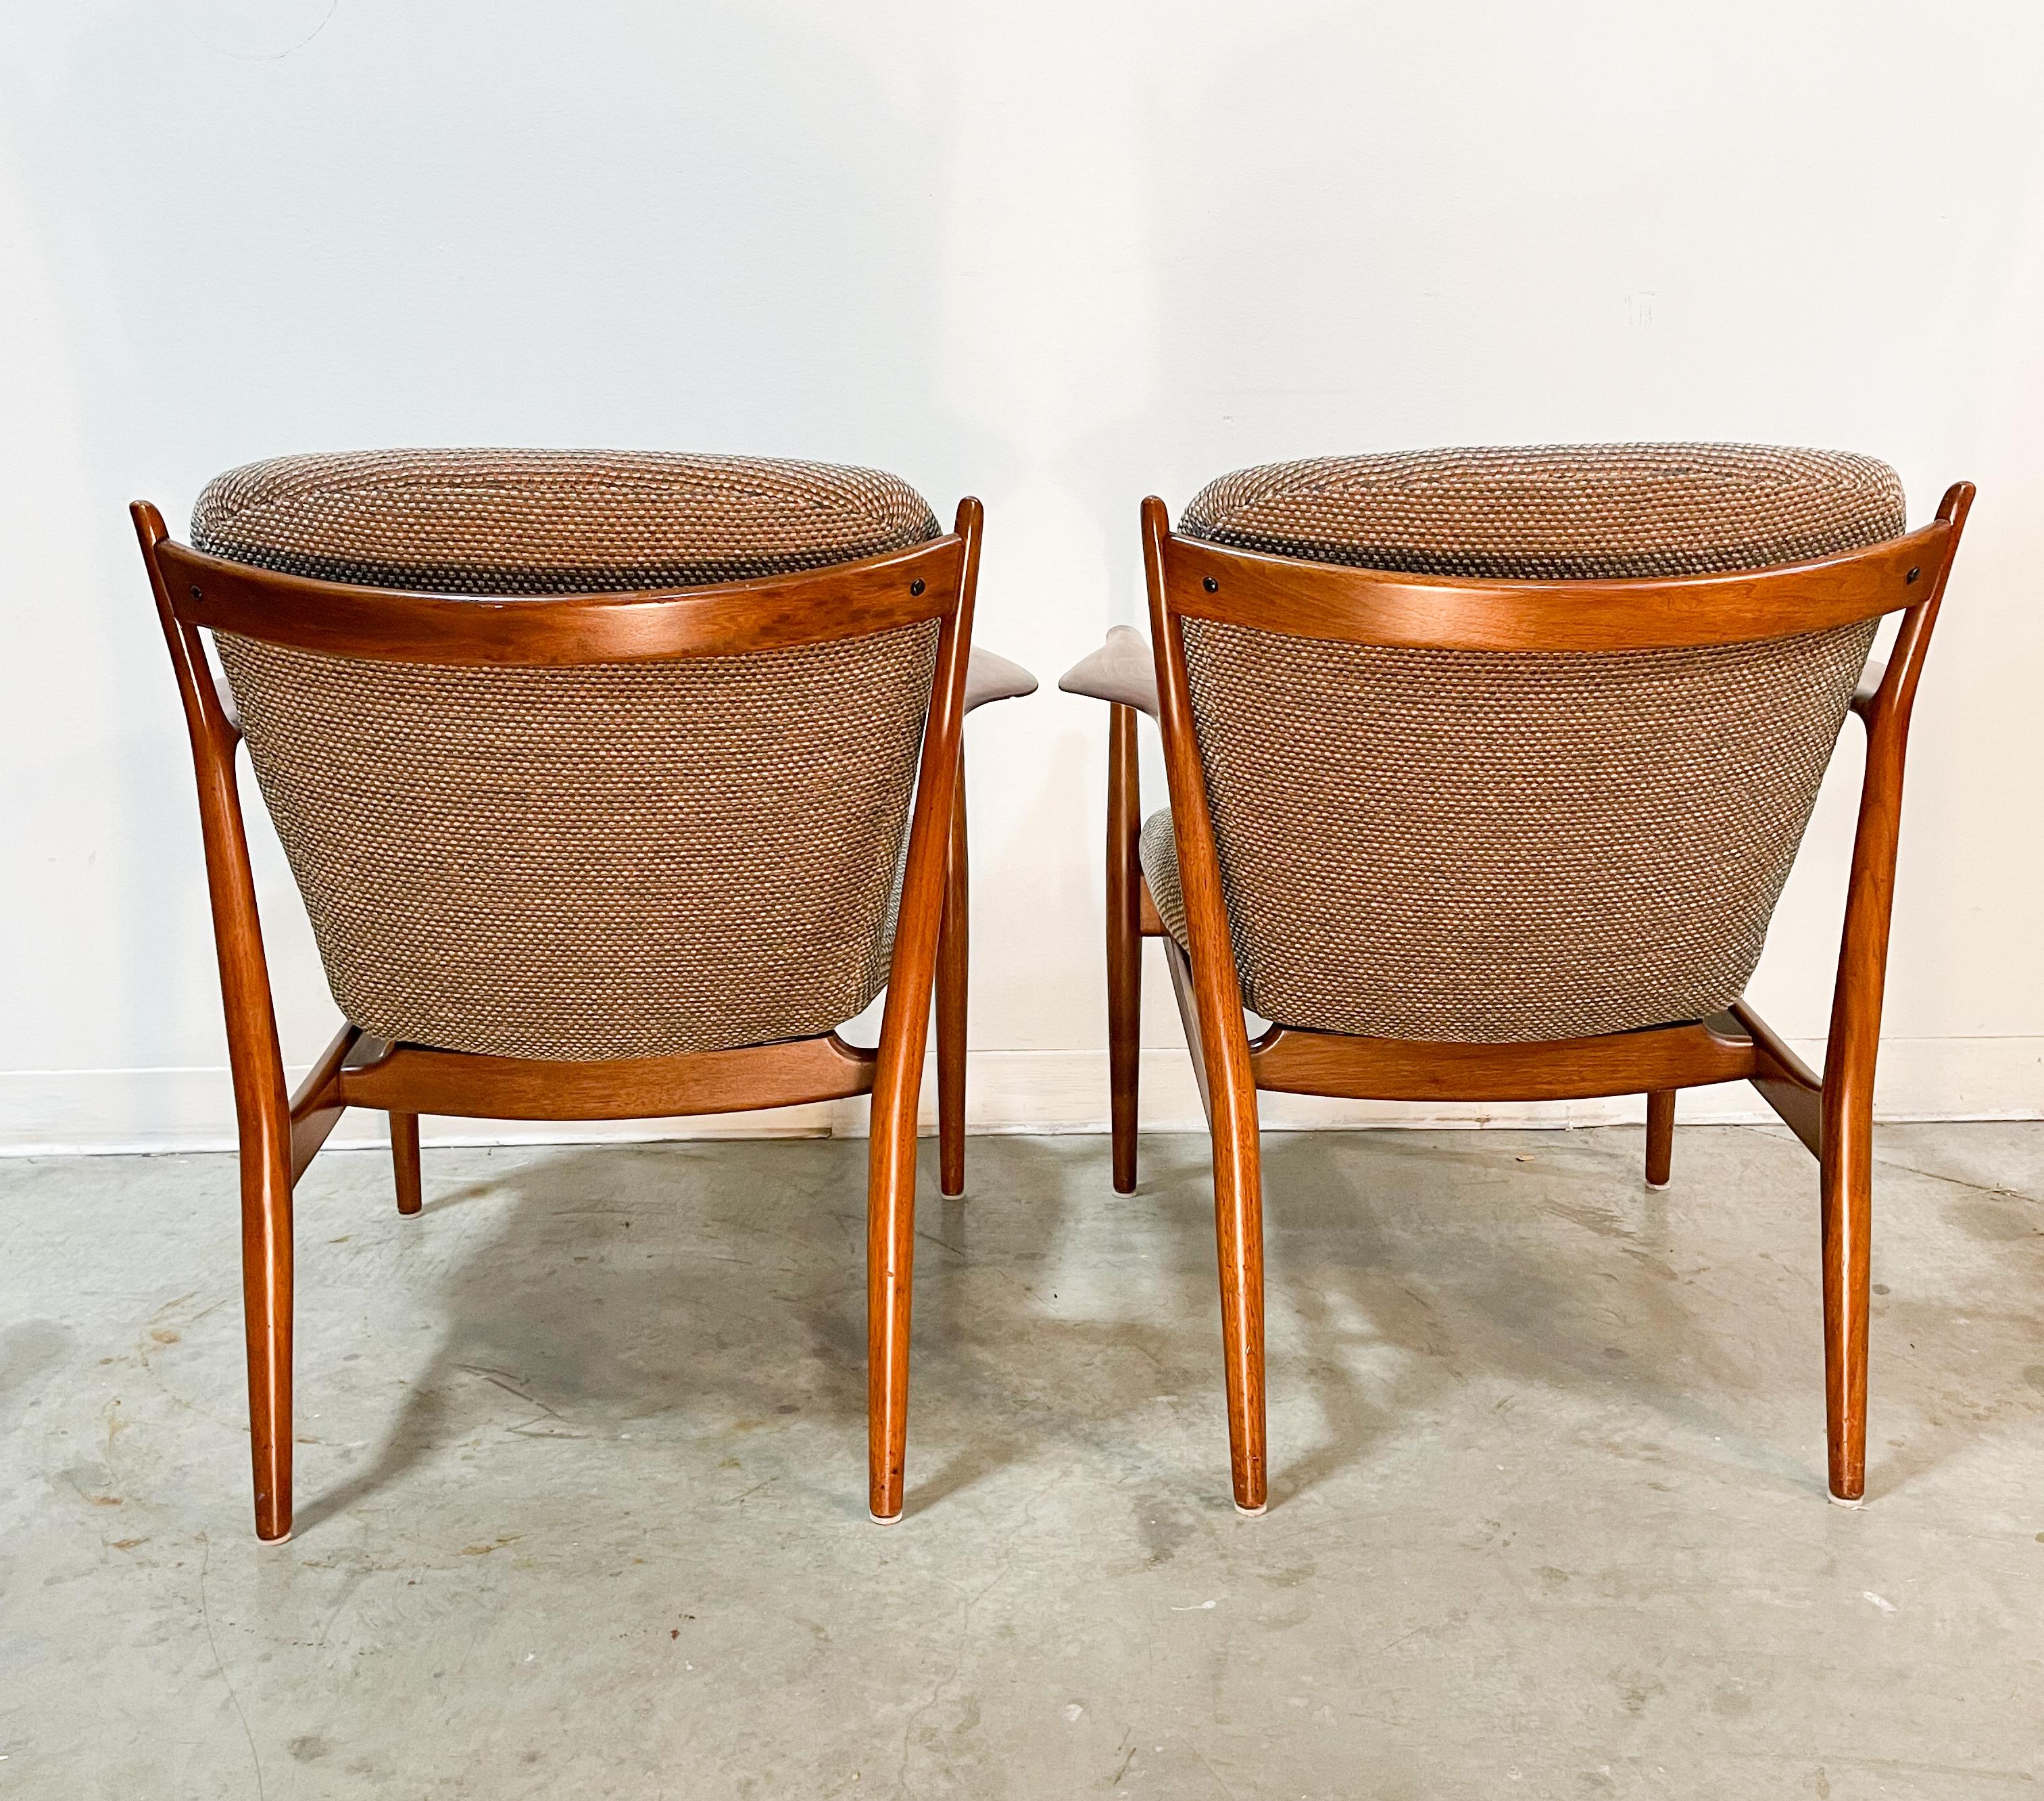 20th Century Finn Juhl Delegate Chairs by Baker, 1950s